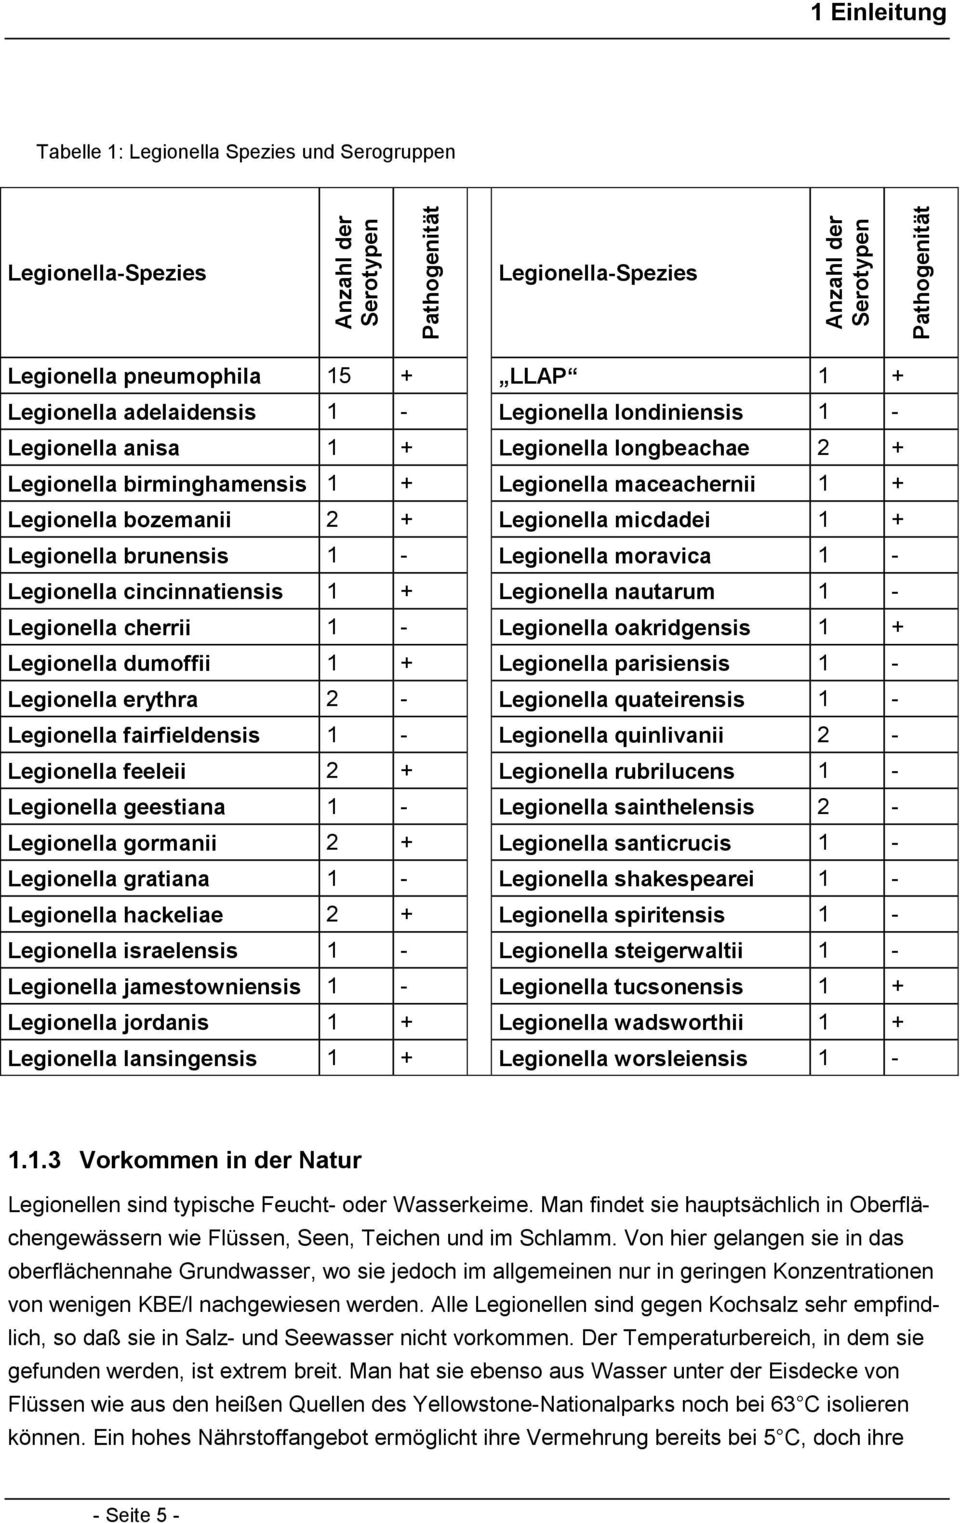 Legionella micdadei 1 + Legionella brunensis 1 - Legionella moravica 1 - Legionella cincinnatiensis 1 + Legionella nautarum 1 - Legionella cherrii 1 - Legionella oakridgensis 1 + Legionella dumoffii